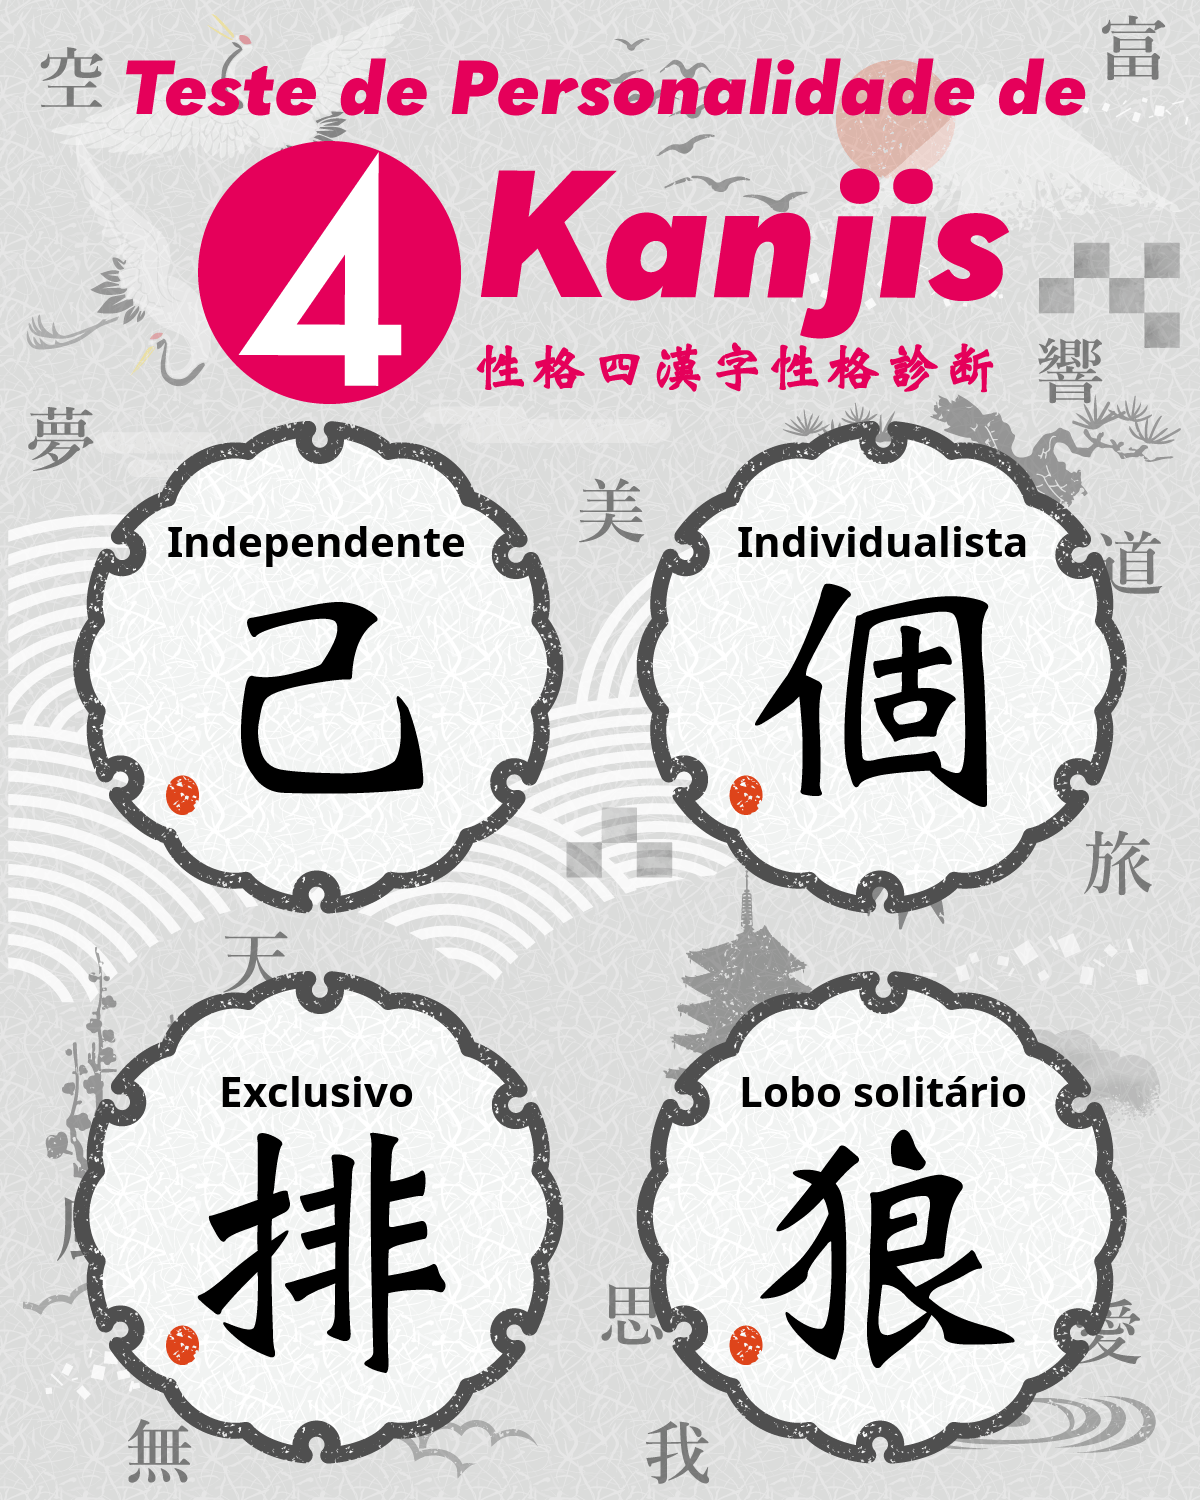 Teste de Personalidade de 4 Kanjis | Que quatro caracteres Kanji descrevem sua personalidade?